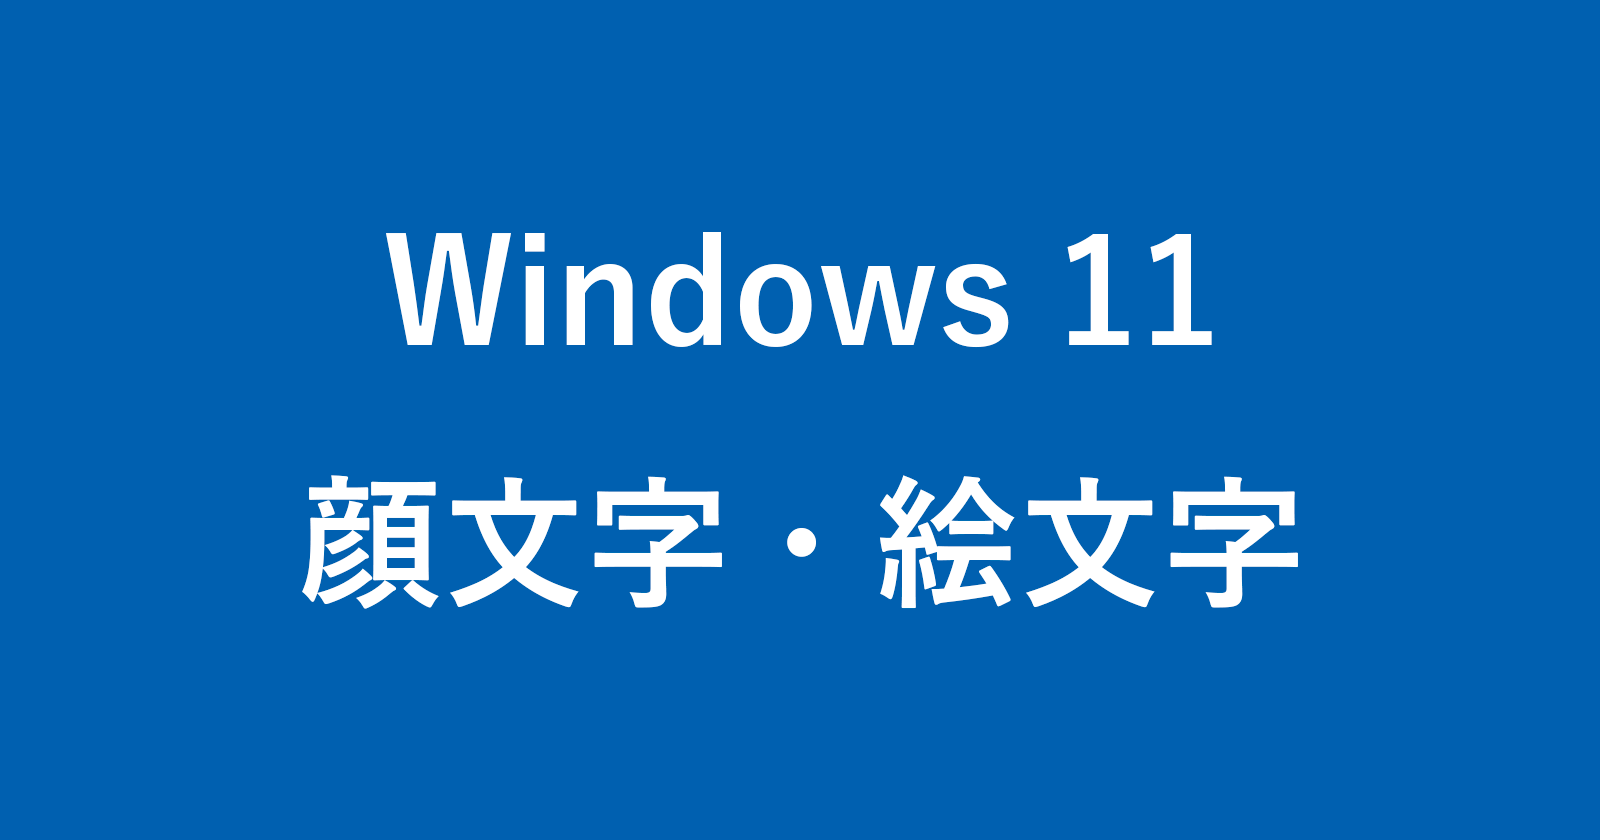 windows 11 input emoji